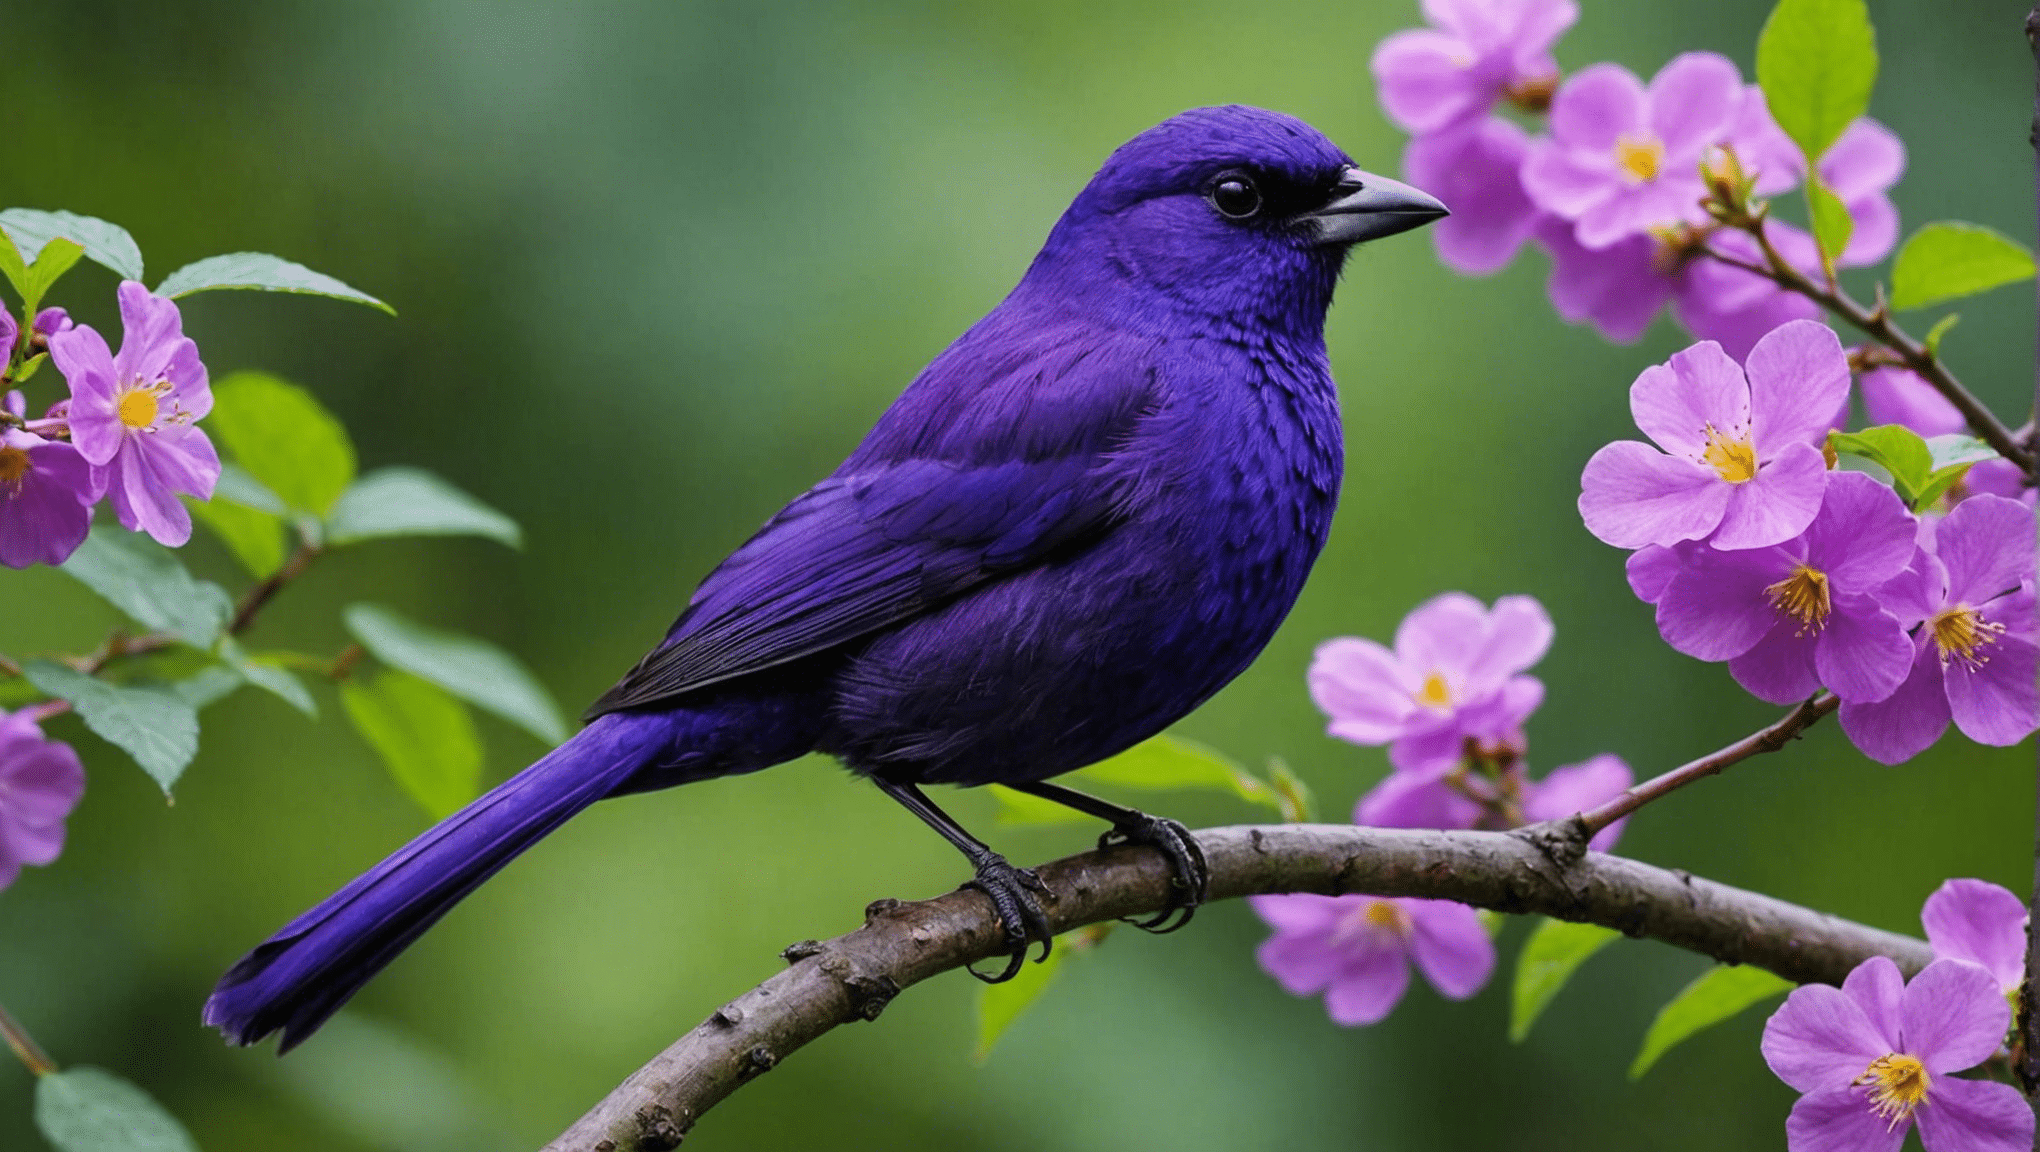 find ud af, om lilla fugle er sjældne i denne informative artikel om fuglearter og deres unikke farver.